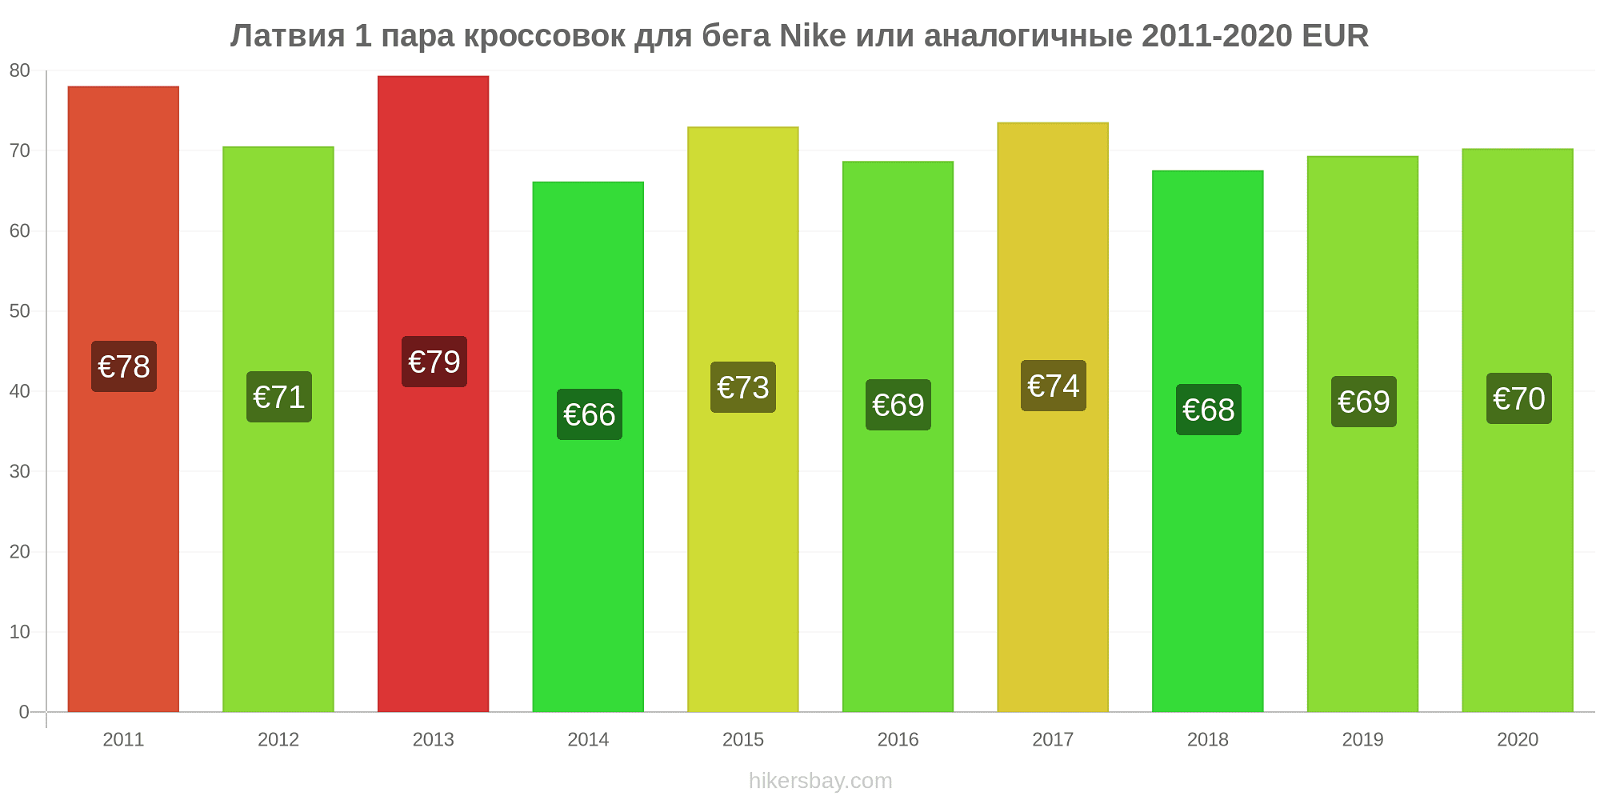 Латвия изменения цен 1 пара кроссовок для бега Nike или аналогичные hikersbay.com